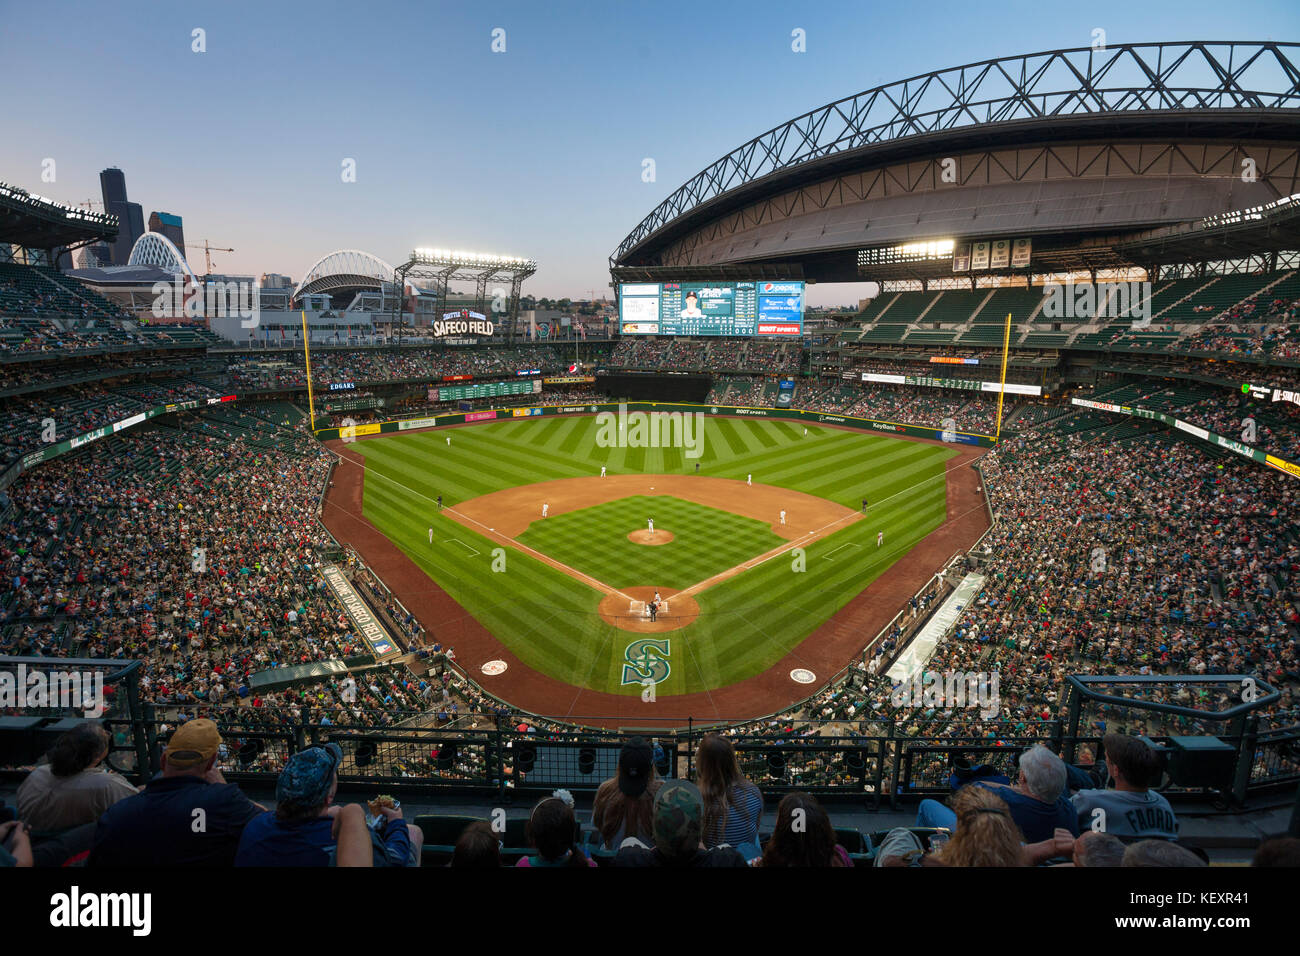 Stade de baseball Safeco Field avec toit escamotable, Seattle, Washington, États-Unis Banque D'Images